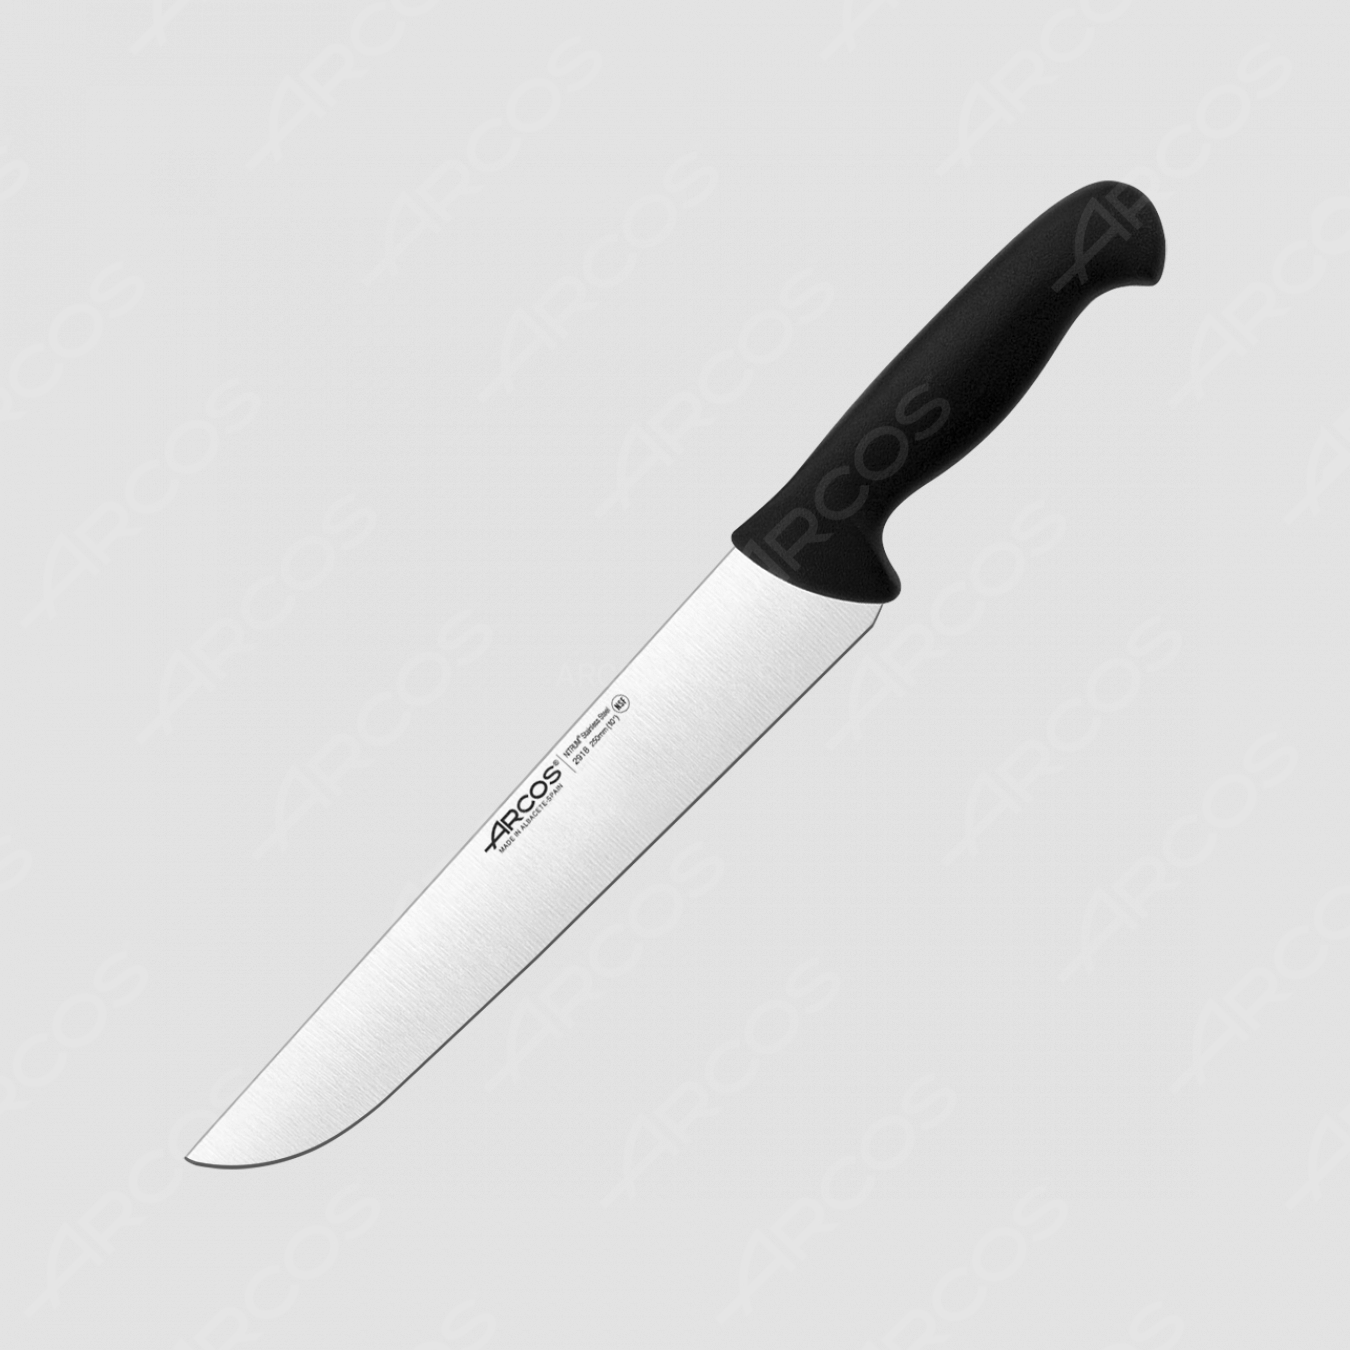 Нож кухонный для разделки 25 см, рукоять - черная, серия 2900, ARCOS, Испания